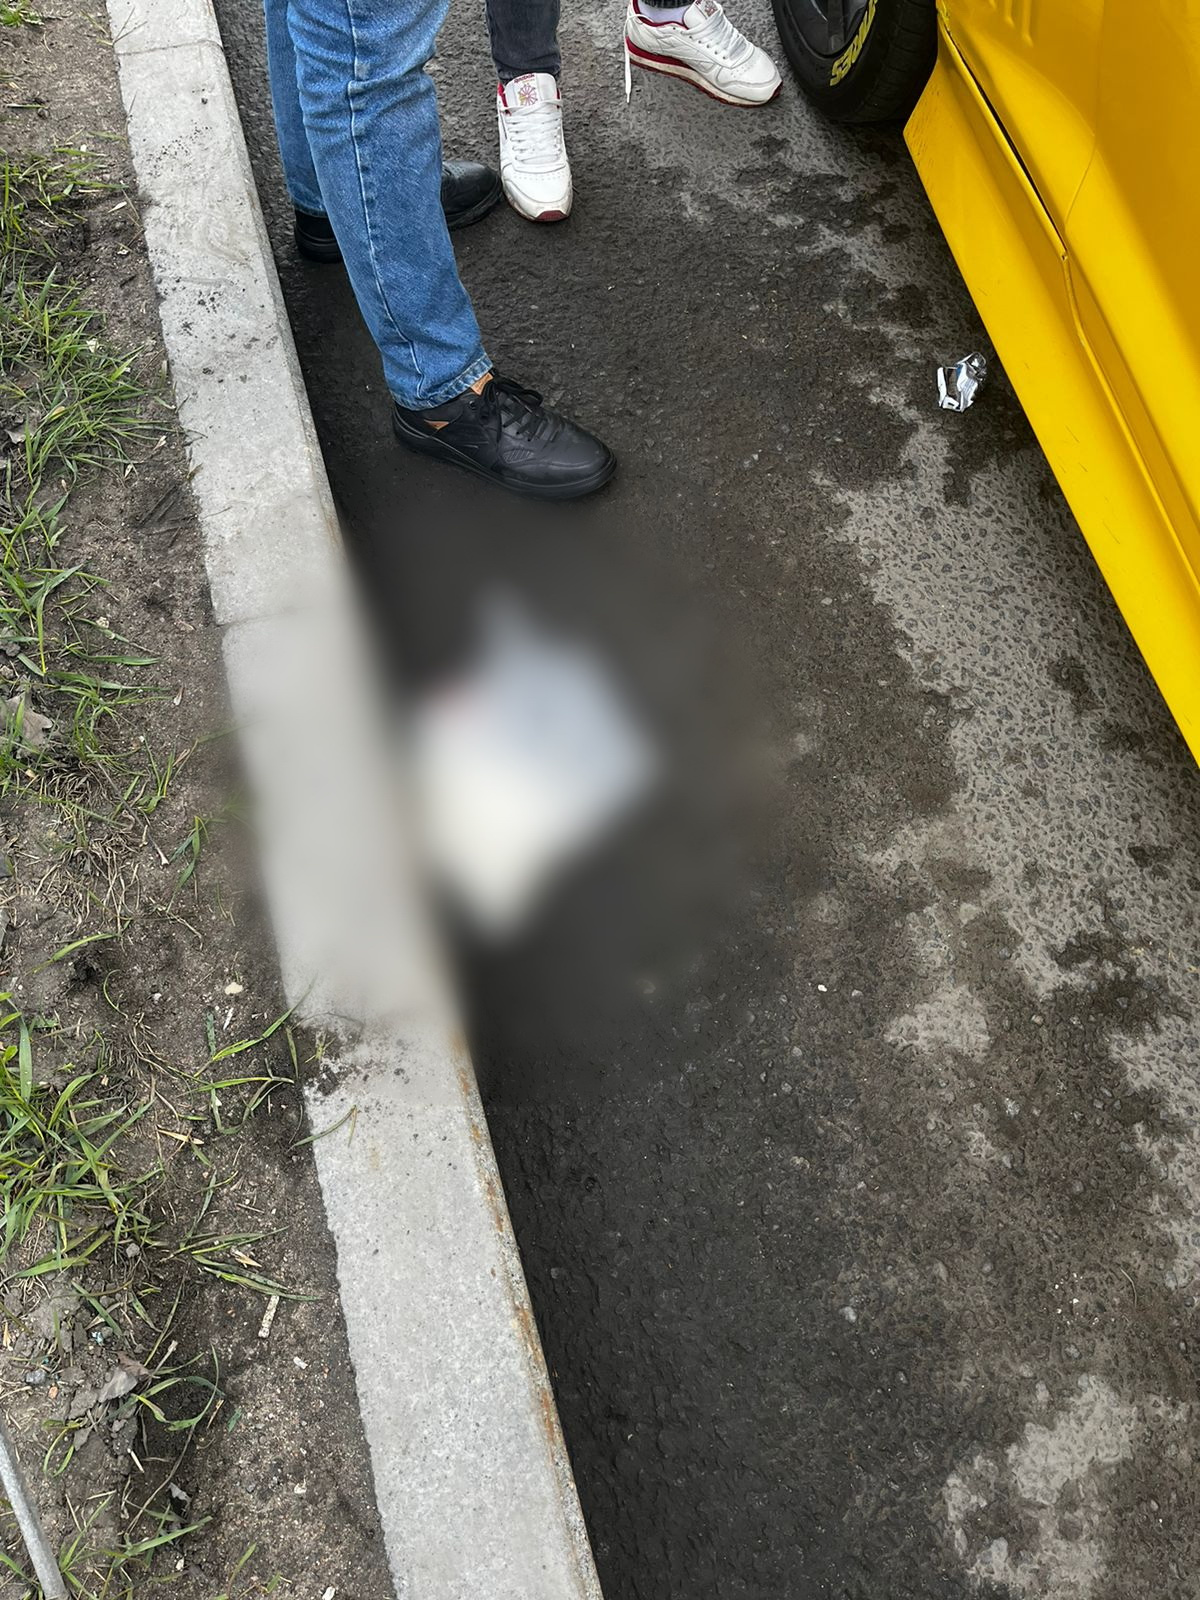 Май остановись. Полкило мефедрона выбросили из окна Chevrolet Camaro в Санкт-Петербурге. В Питере сбили молодого человека 1 мая. Парень выпал из авто на свадьбе.